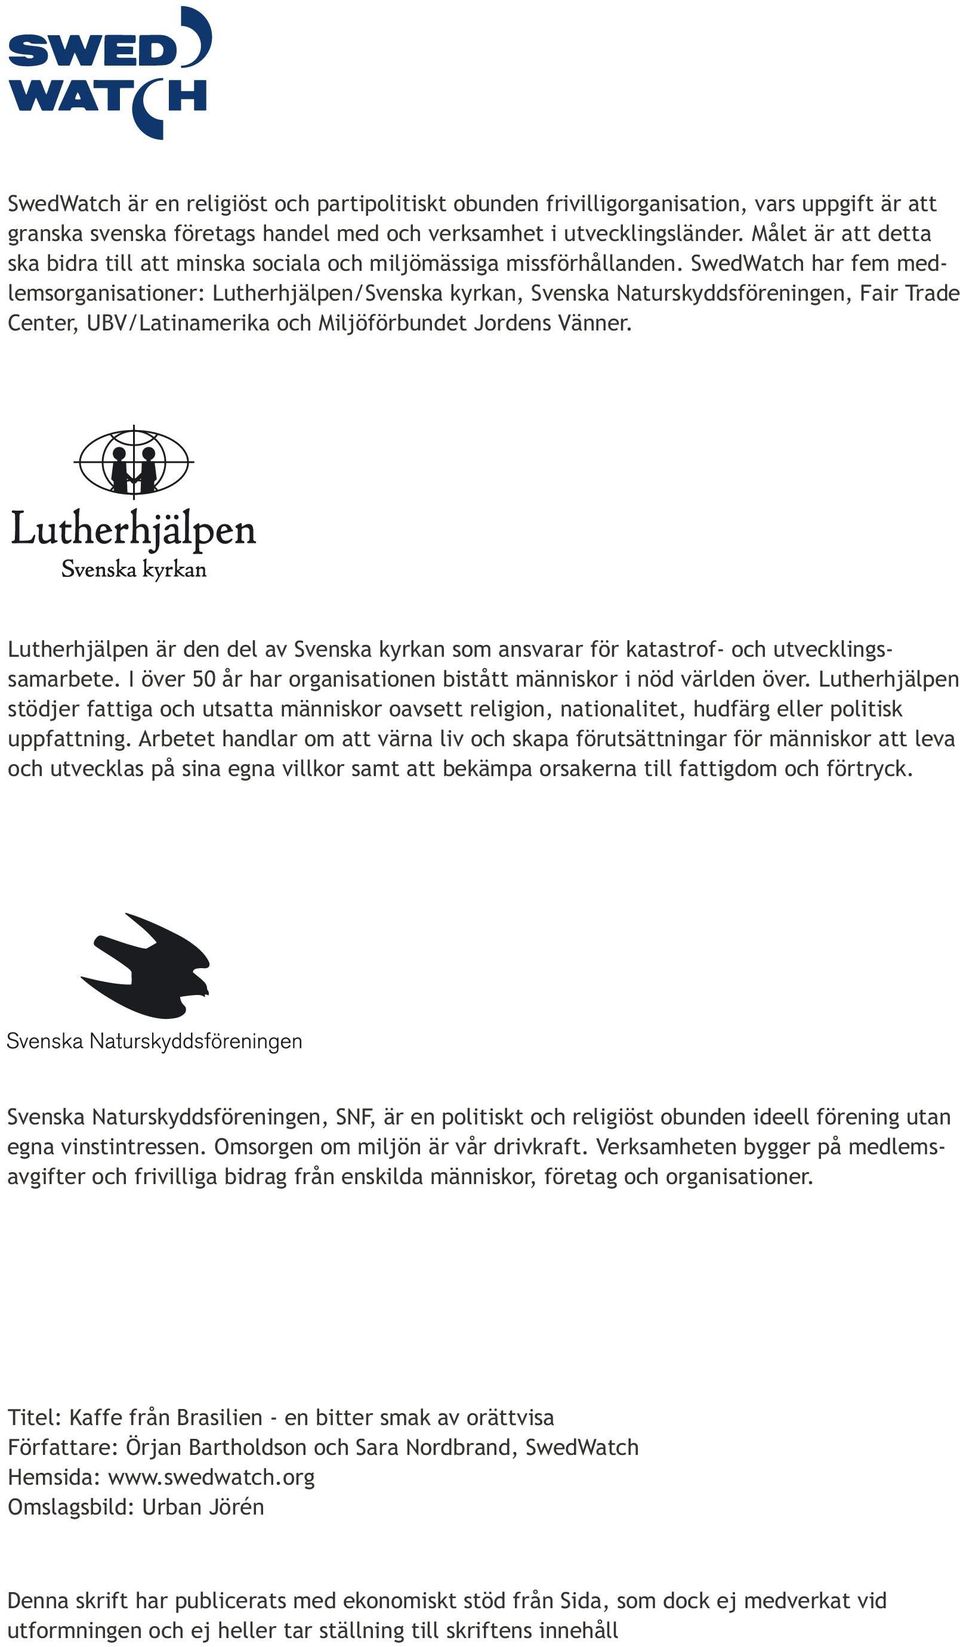 SwedWatch har fem medlemsorganisationer: Lutherhjälpen/Svenska kyrkan, Svenska Naturskyddsföreningen, Fair Trade Center, UBV/Latinamerika och Miljöförbundet Jordens Vänner.